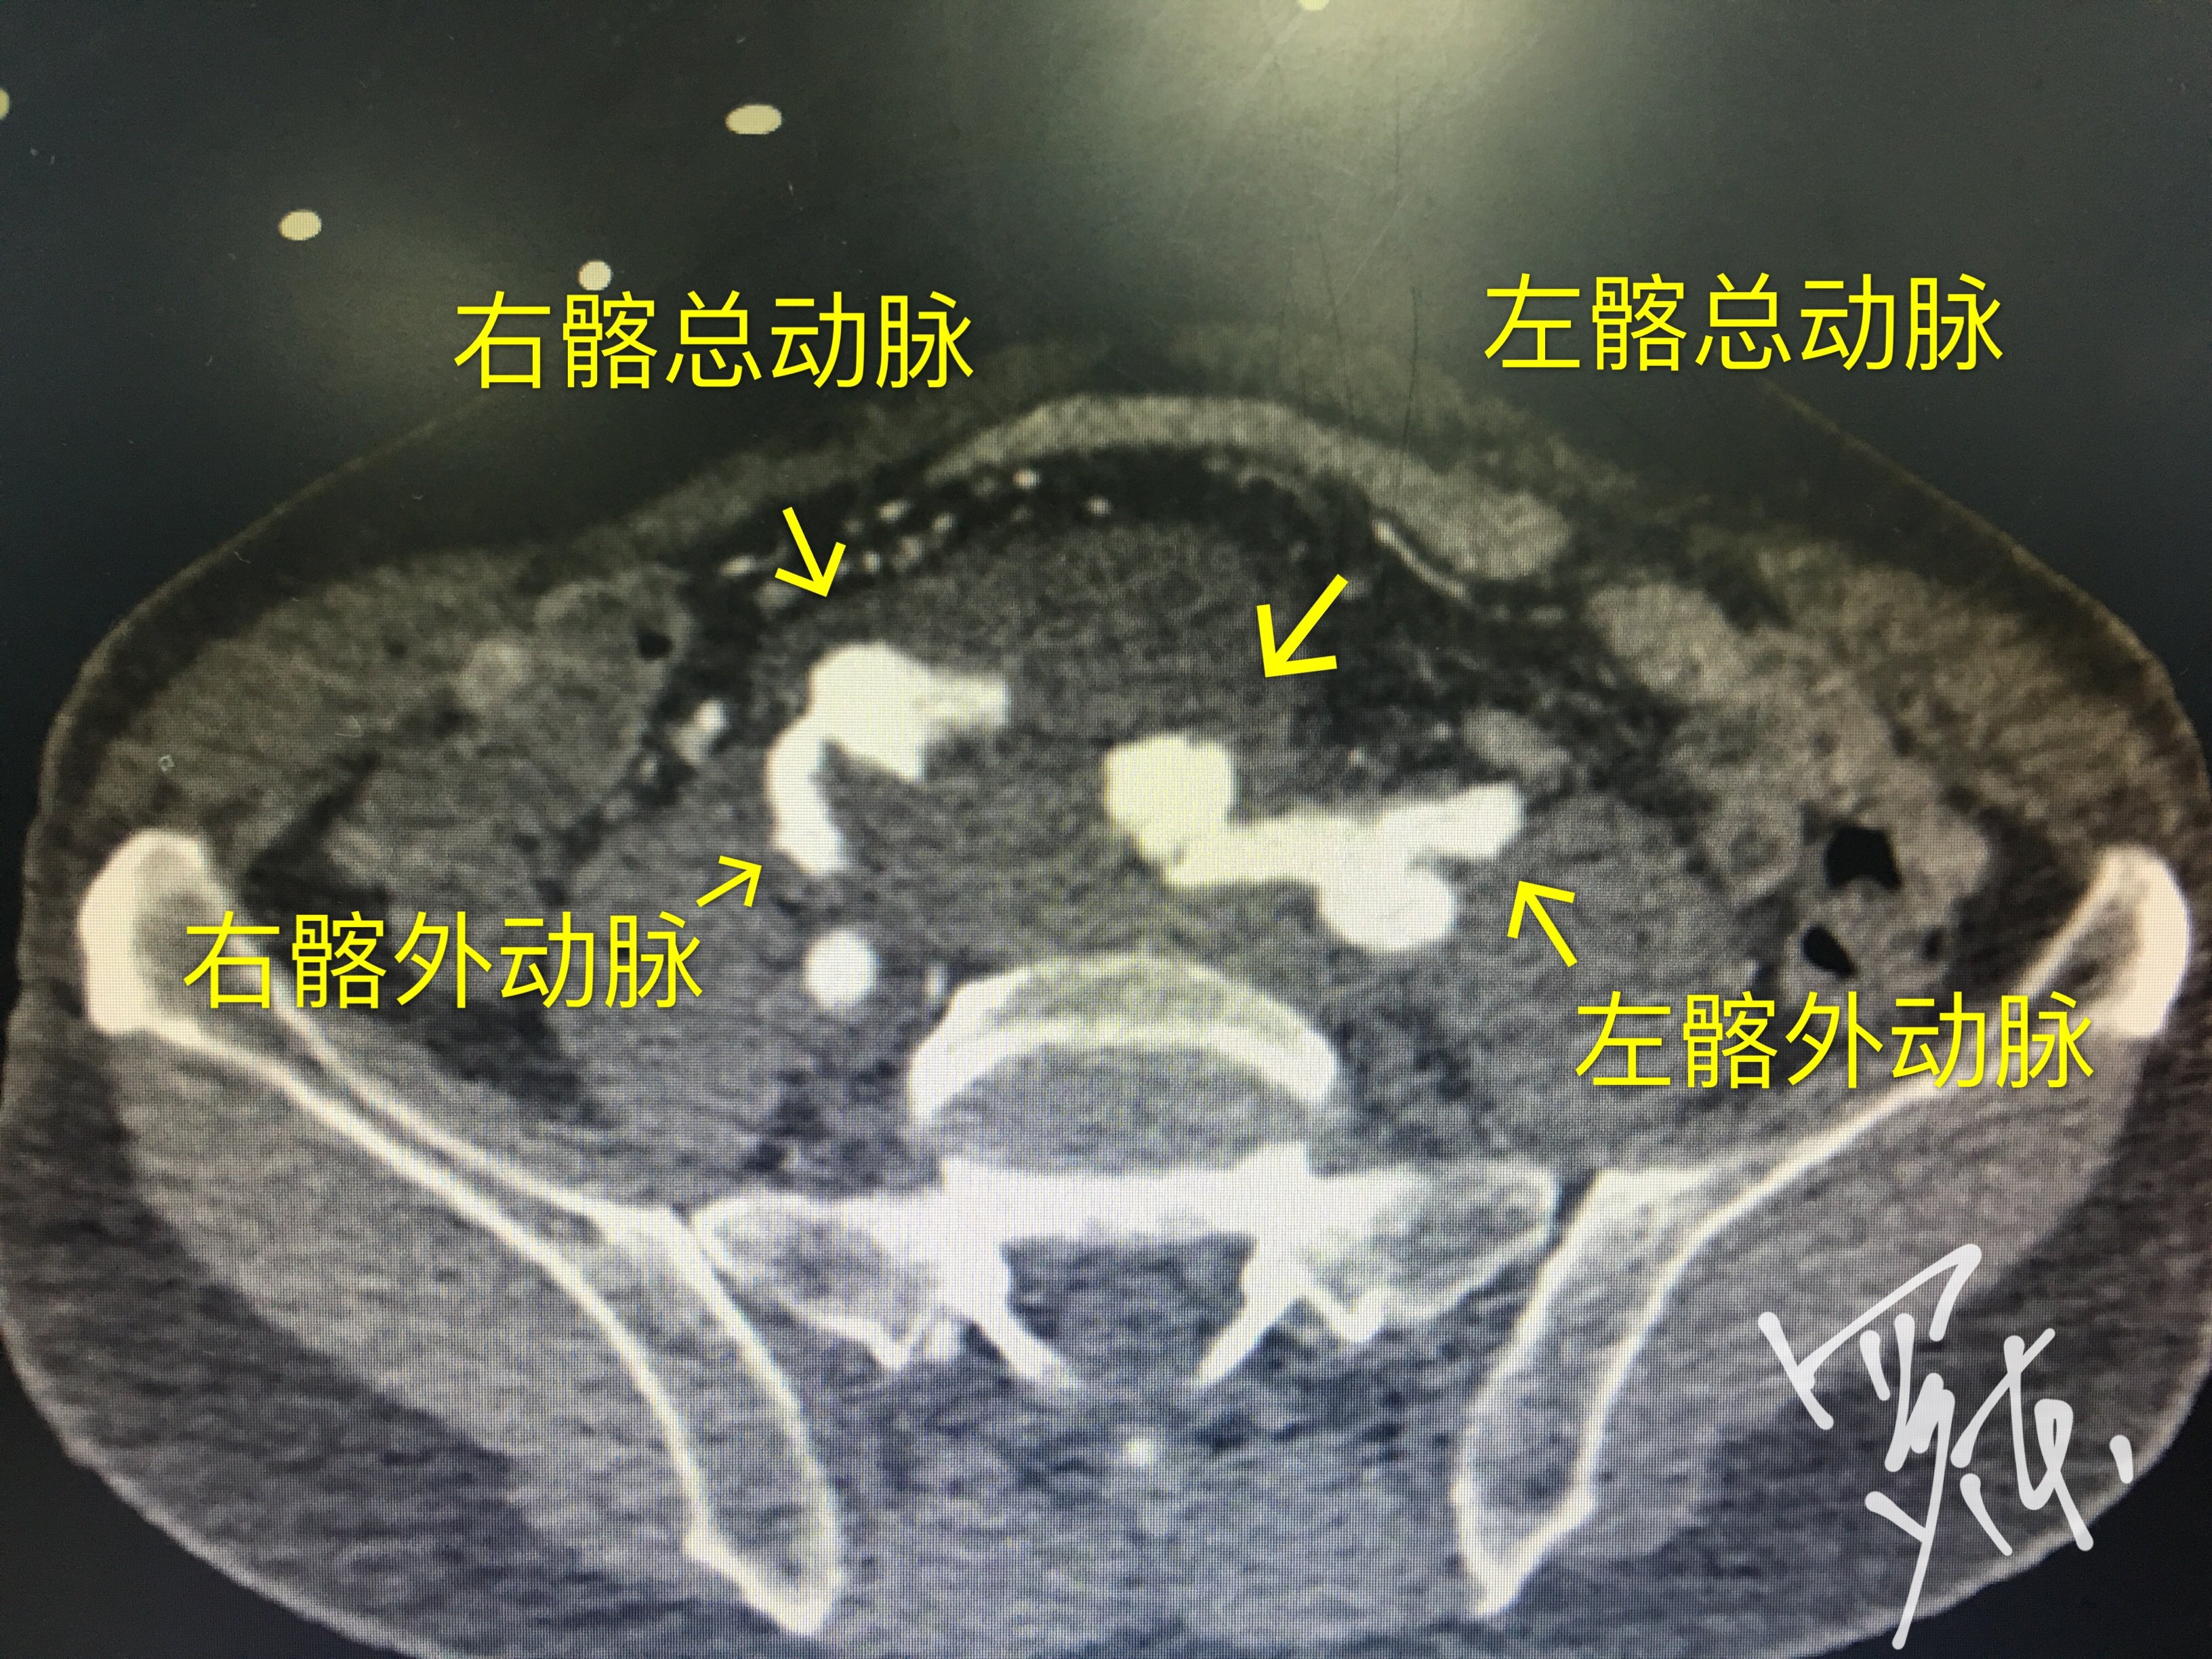 髂动脉CT解剖图图片